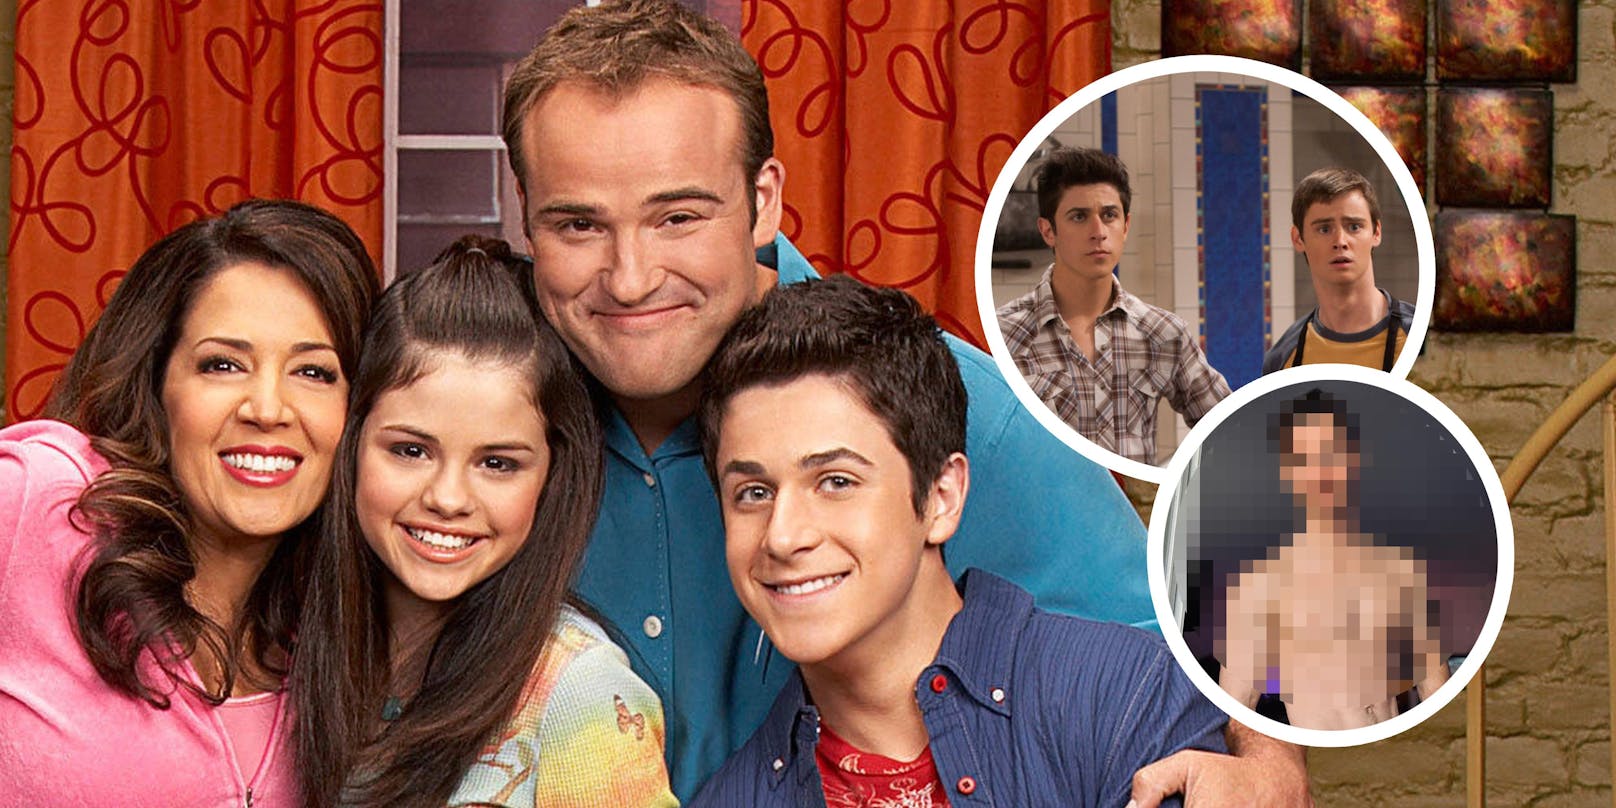 Daniel Benson spielte neben Selena Gomez in der Disney-Serie "Die Zauberer vom Waverly Place" mit.